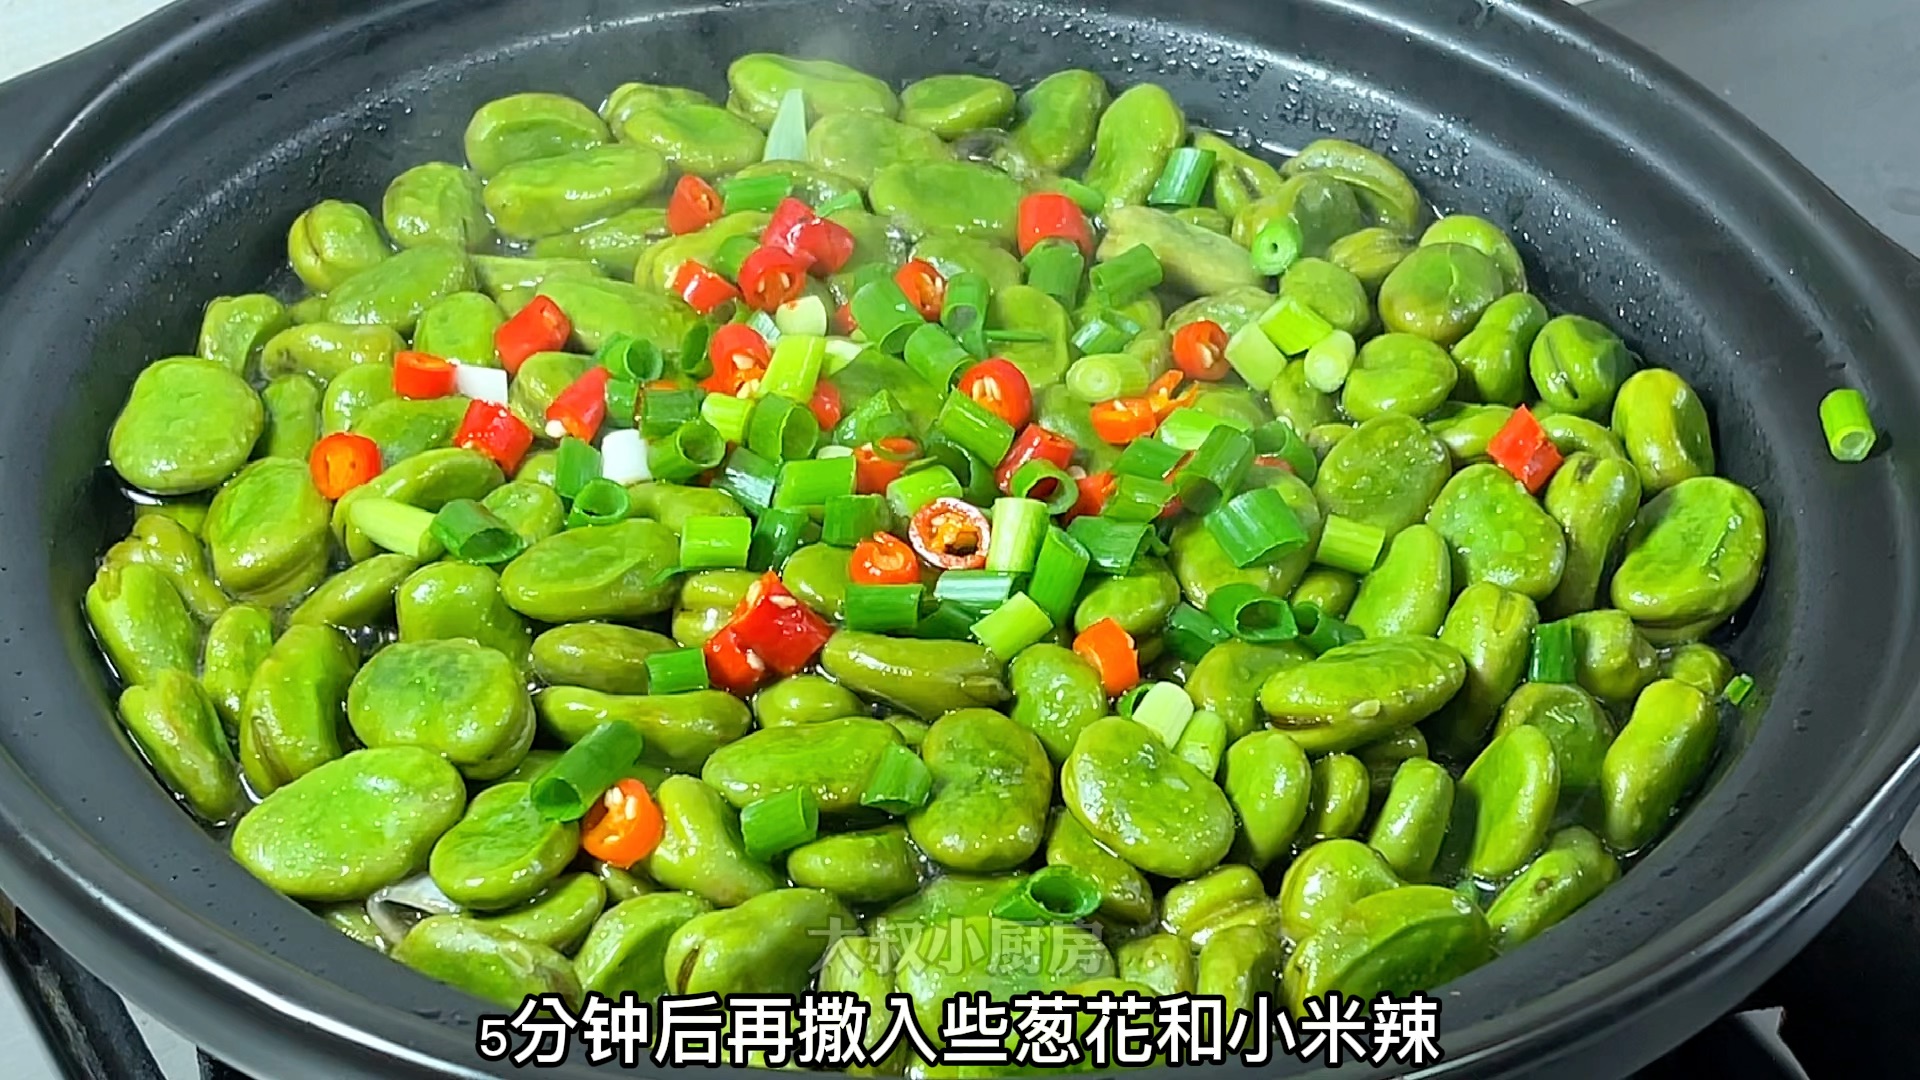 蚕豆不要总是炒着吃了,试试这个砂锅油焖蚕豆吧,做法简单又好吃